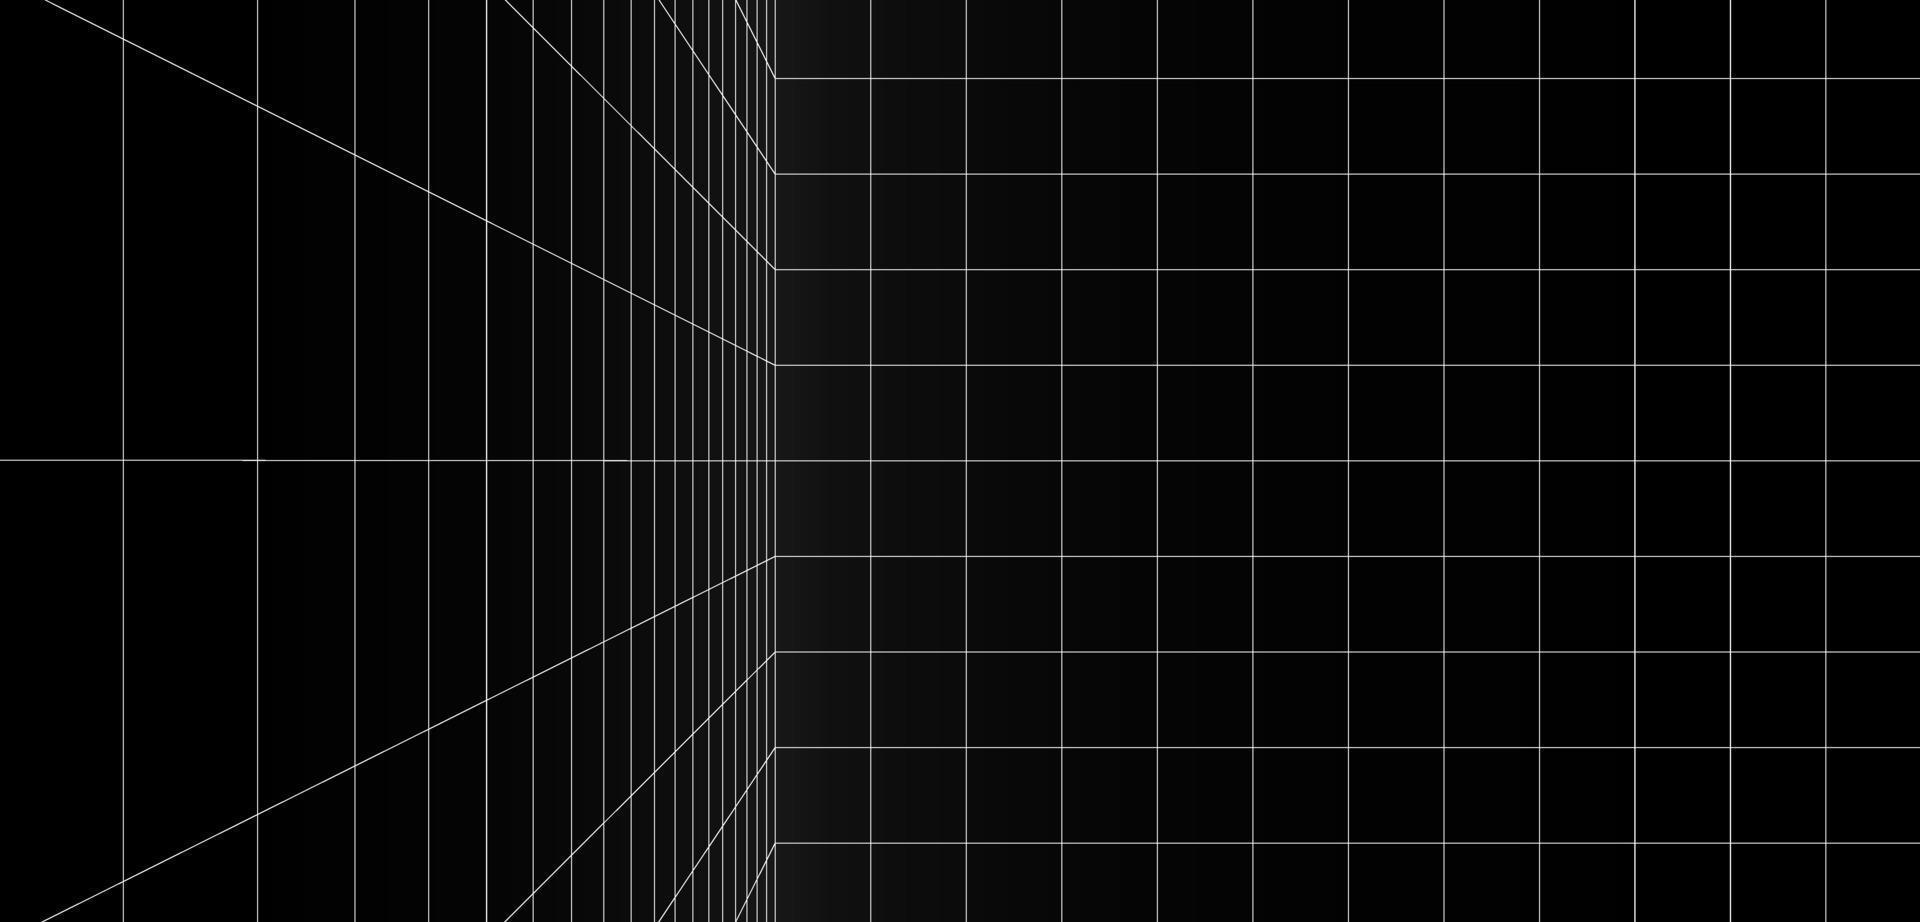 Dimension digitaler Hintergrund mit schwarz-weißer Rasterraumlinie Farbfläche vektor